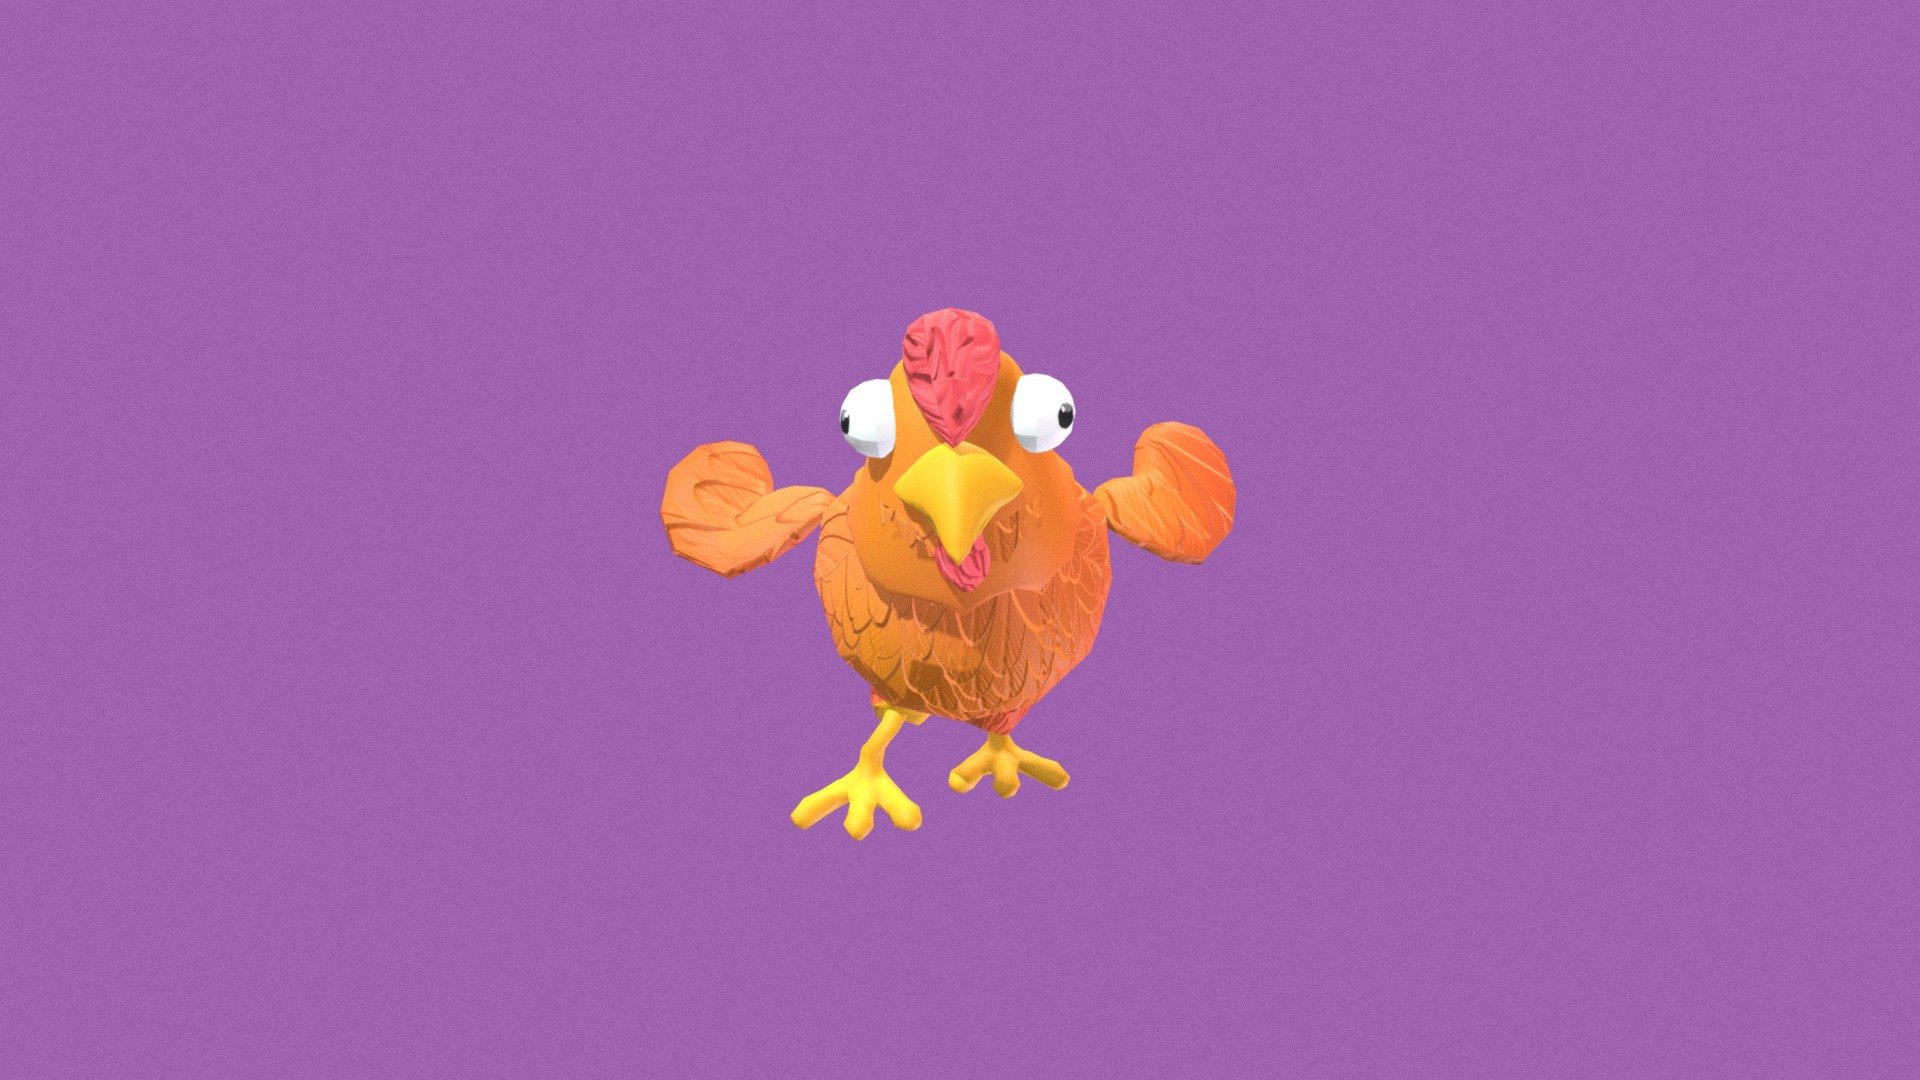 chicken_run2_animation - 3D model by seysdiianimation 3d model